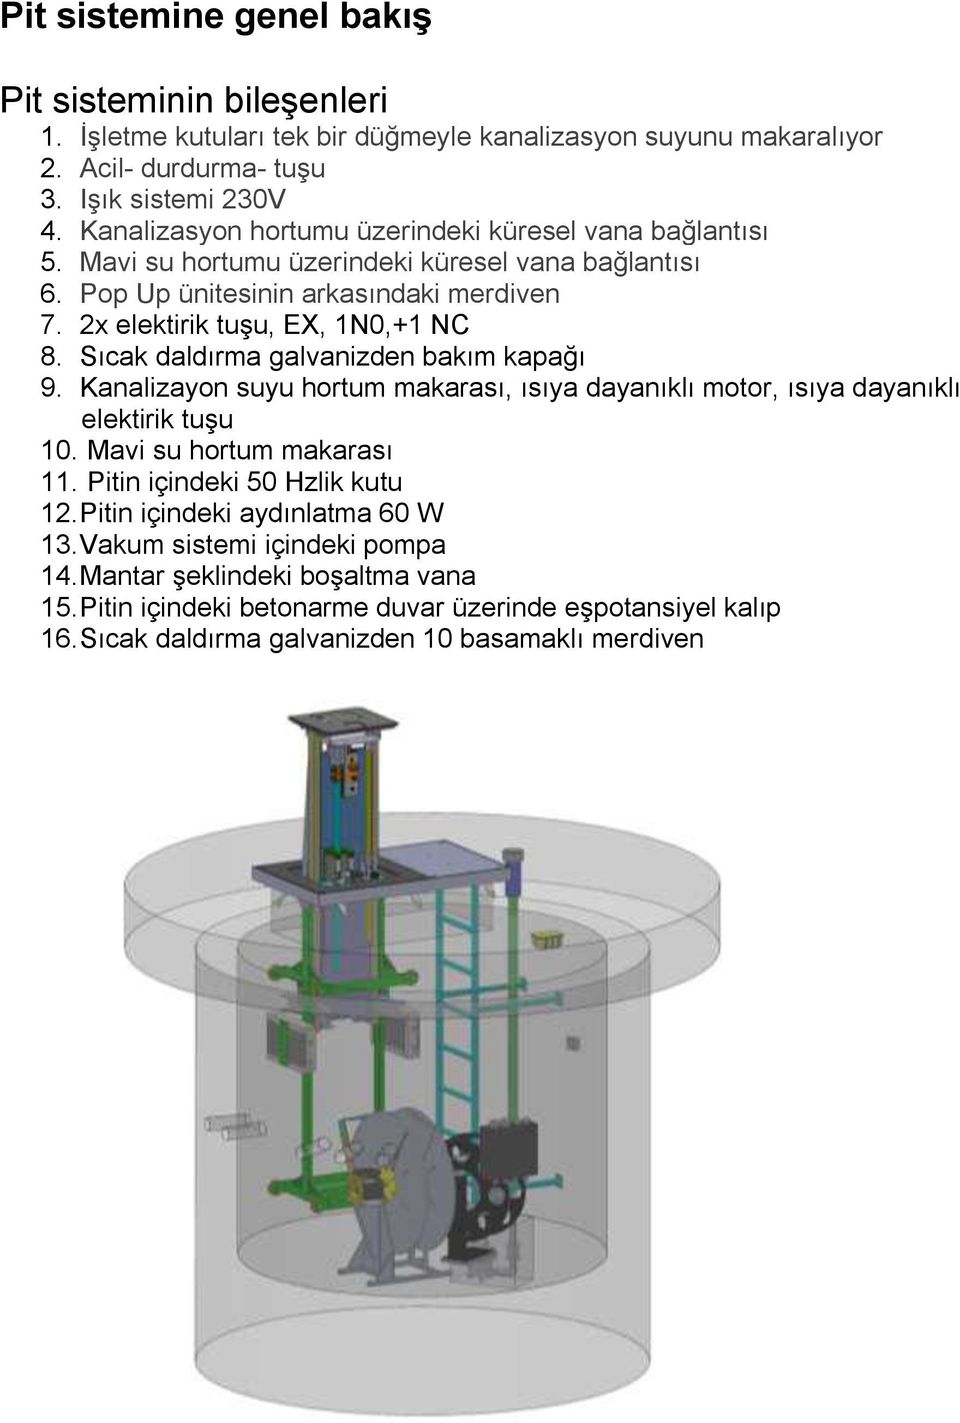 Sıcak daldırma galvanizden bakım kapağı 9. Kanalizayon suyu hortum makarası, ısıya dayanıklı motor, ısıya dayanıklı elektirik tuşu 10. Mavi su hortum makarası 11.